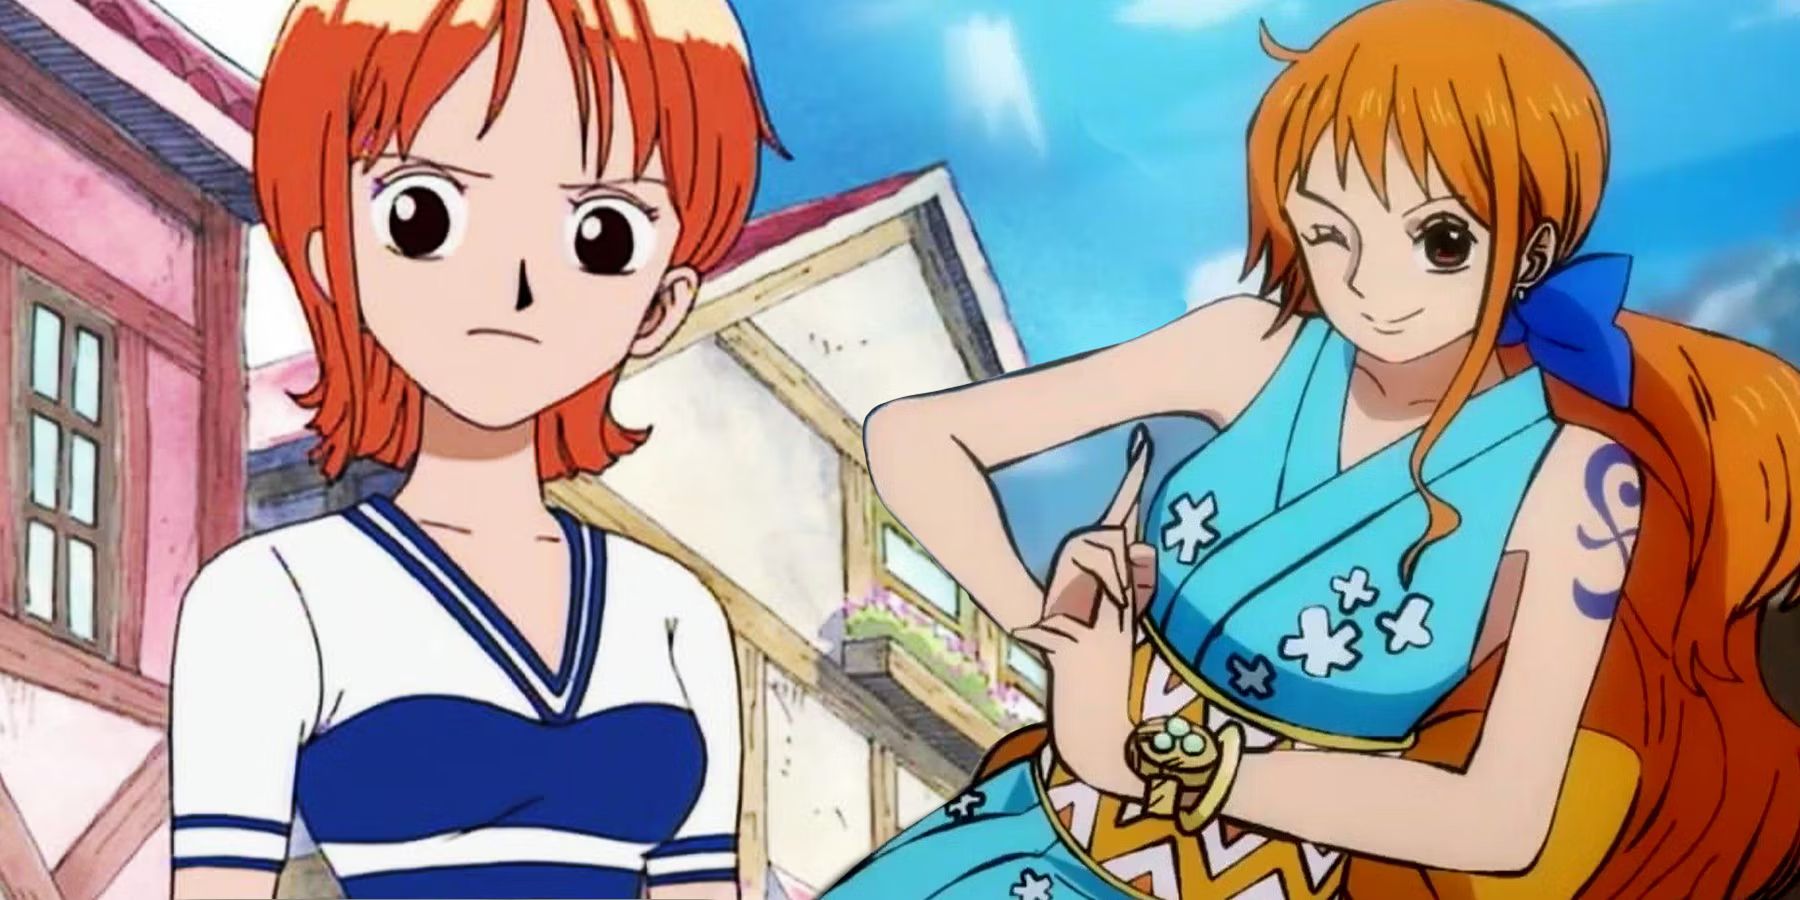 Imagens de Nami de One Piece antes e depois do salto no tempo mostram ela em pé enquanto é desenhada em dois designs diferentes.  Uma de sua primeira aparição em Orange Town e a segunda é ela vestindo um quimono azul de Wano.